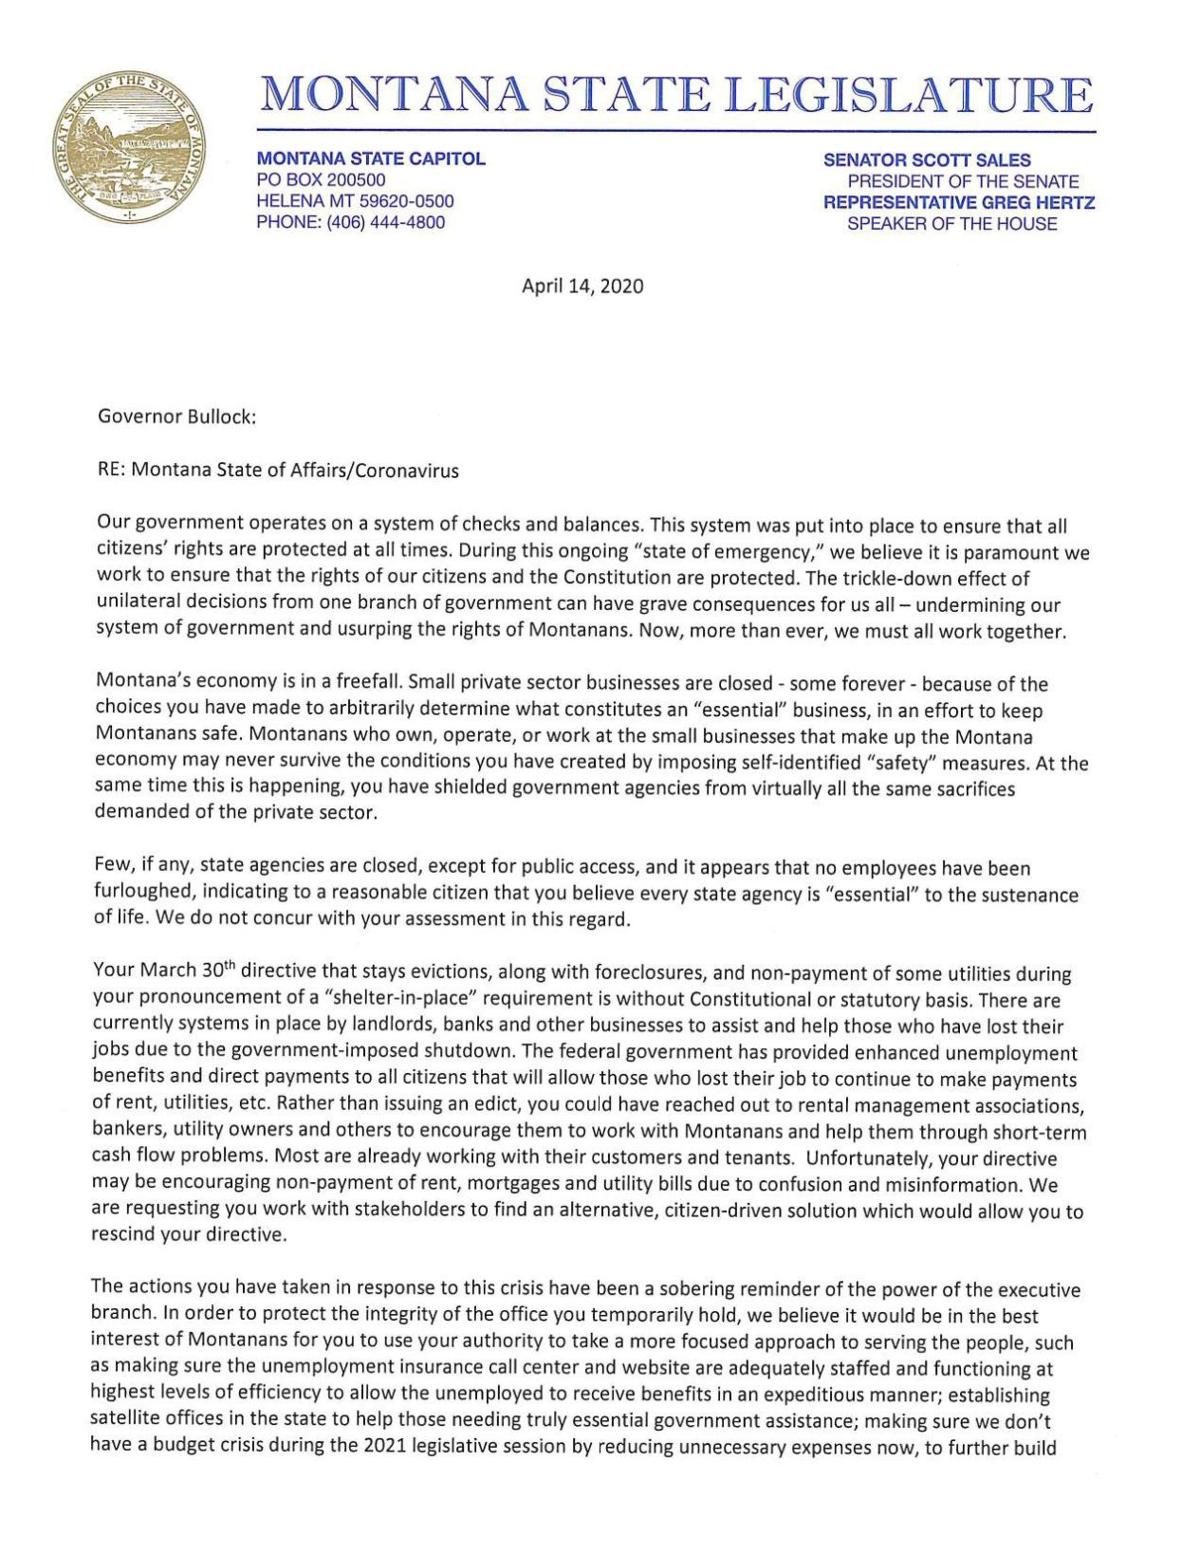 State legislators write letter to Bullock voicing concerns over COVID